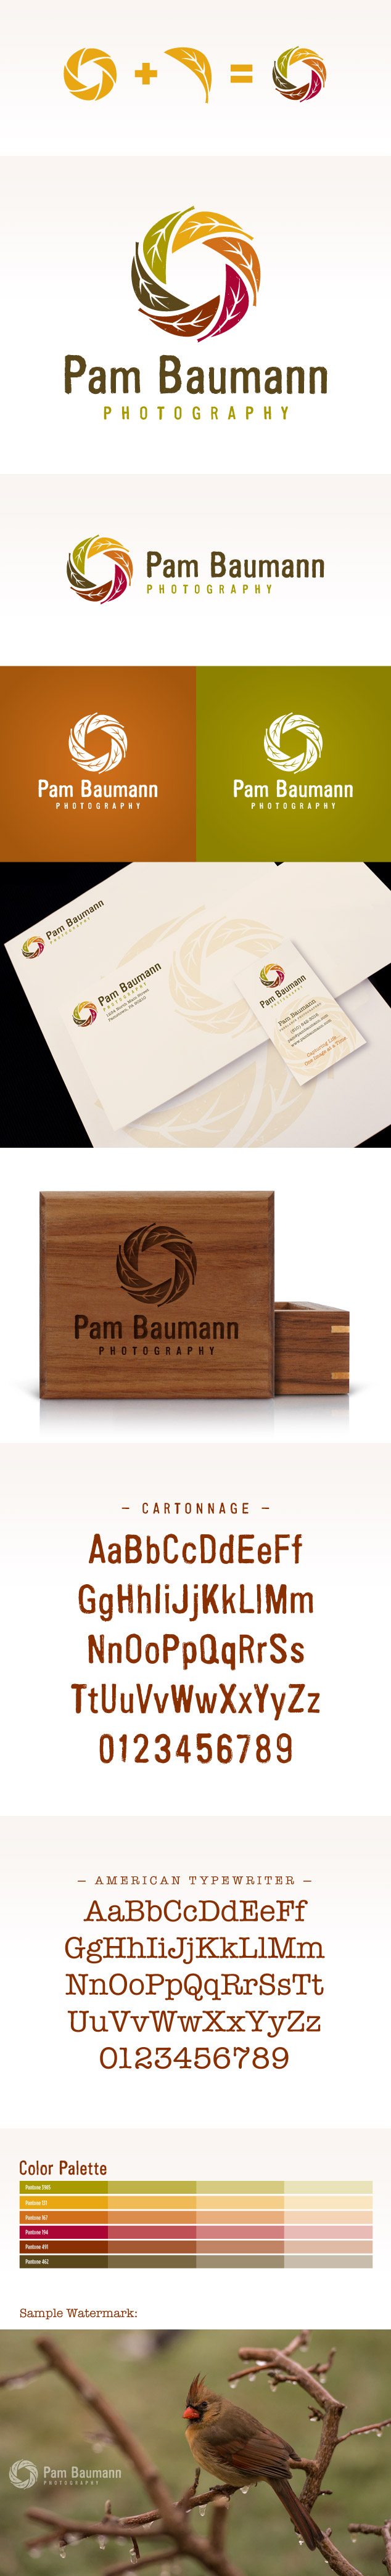 Pam-Baumann-logo-branding